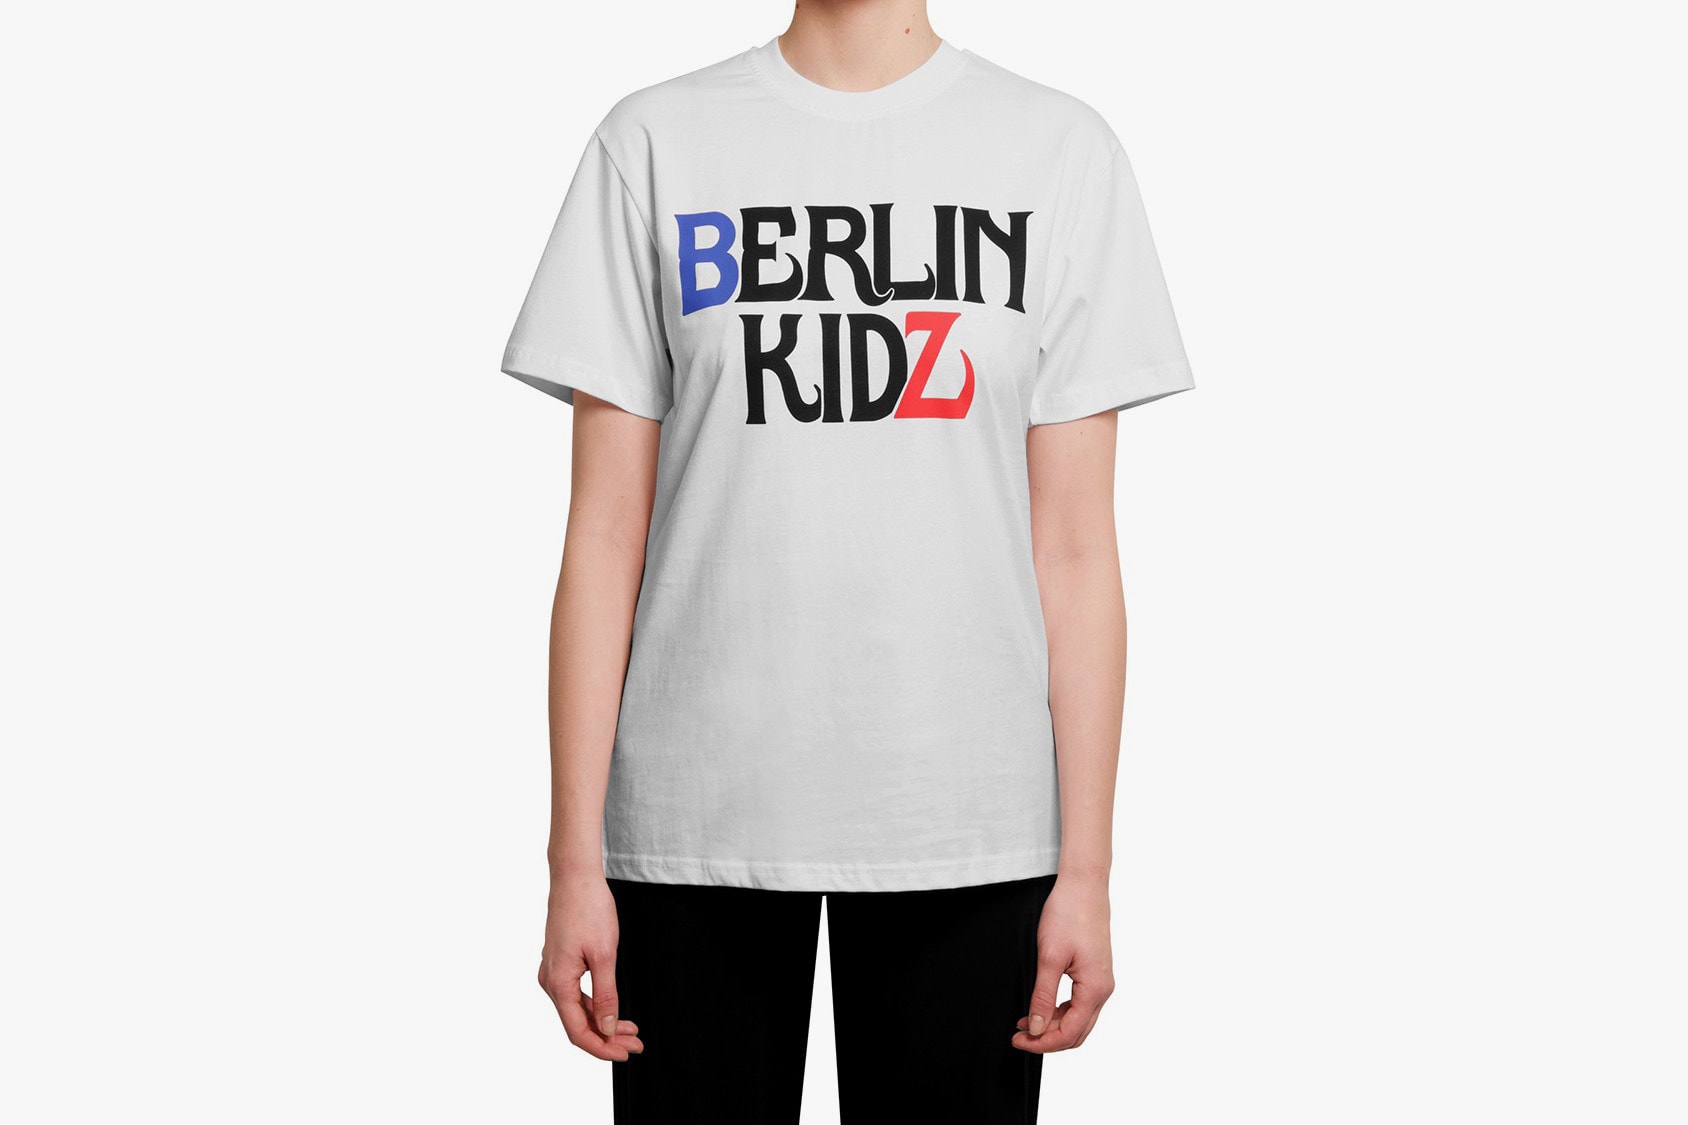 032c Berlin Kidz Merchandise Capsule Awake NY Whitehouse 3000